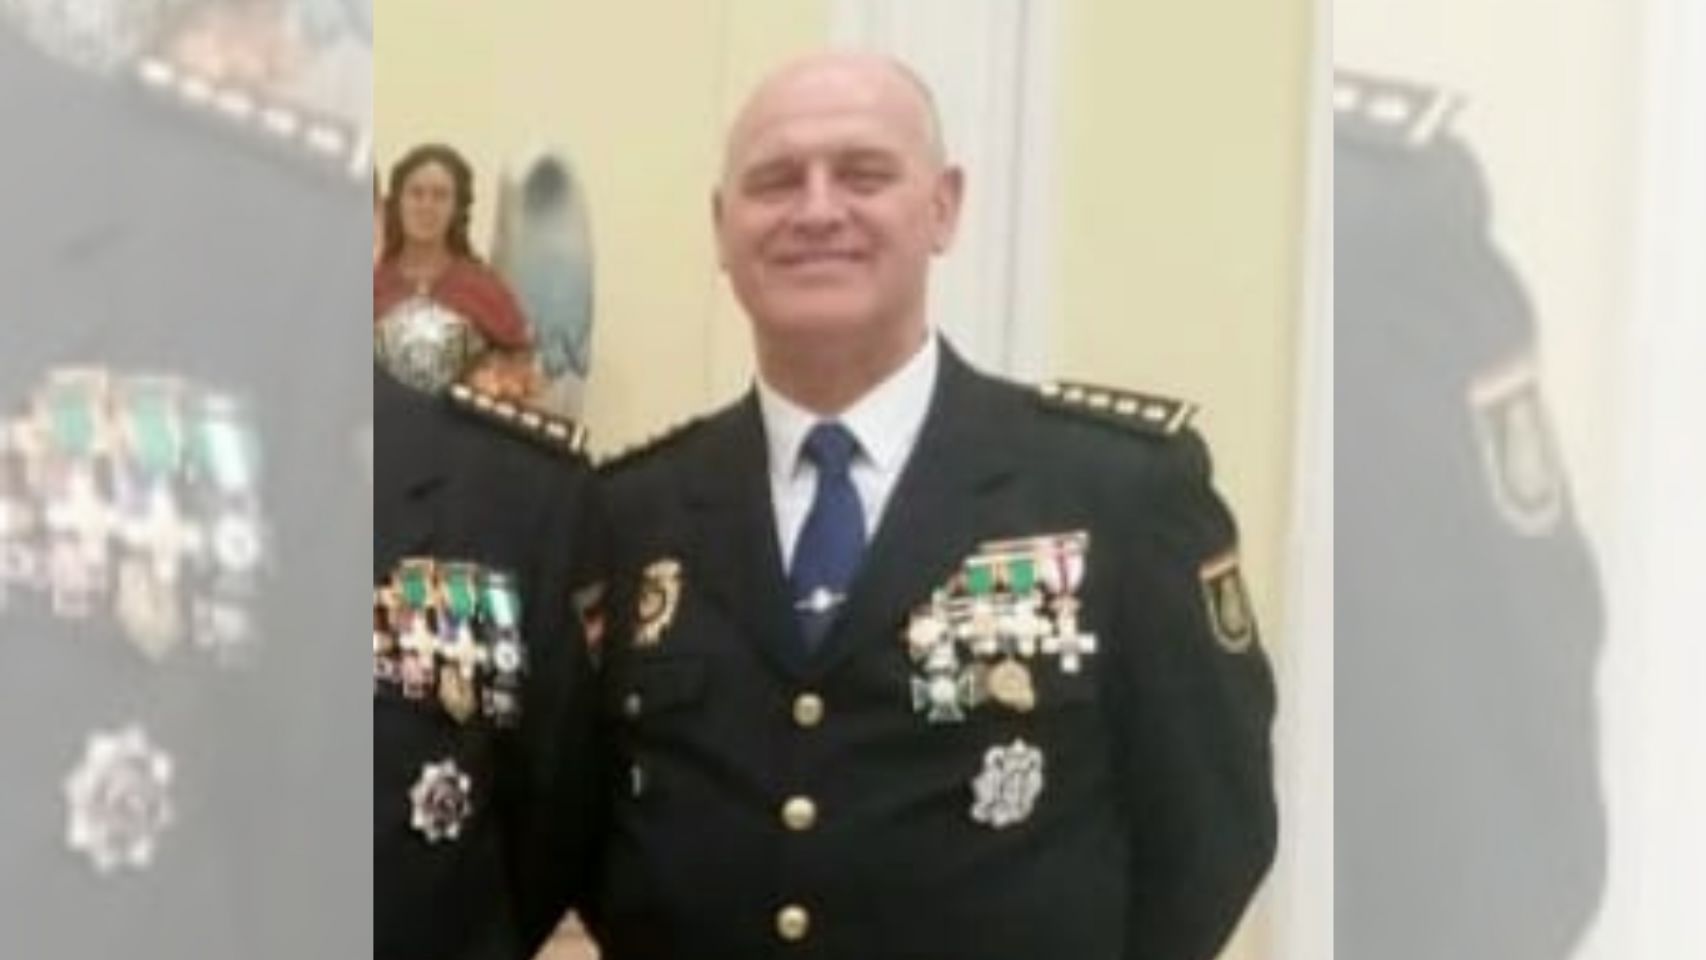 El comisario principal Ramón Gómez Nieto, nuevo jefe superior de Policía de Galicia.